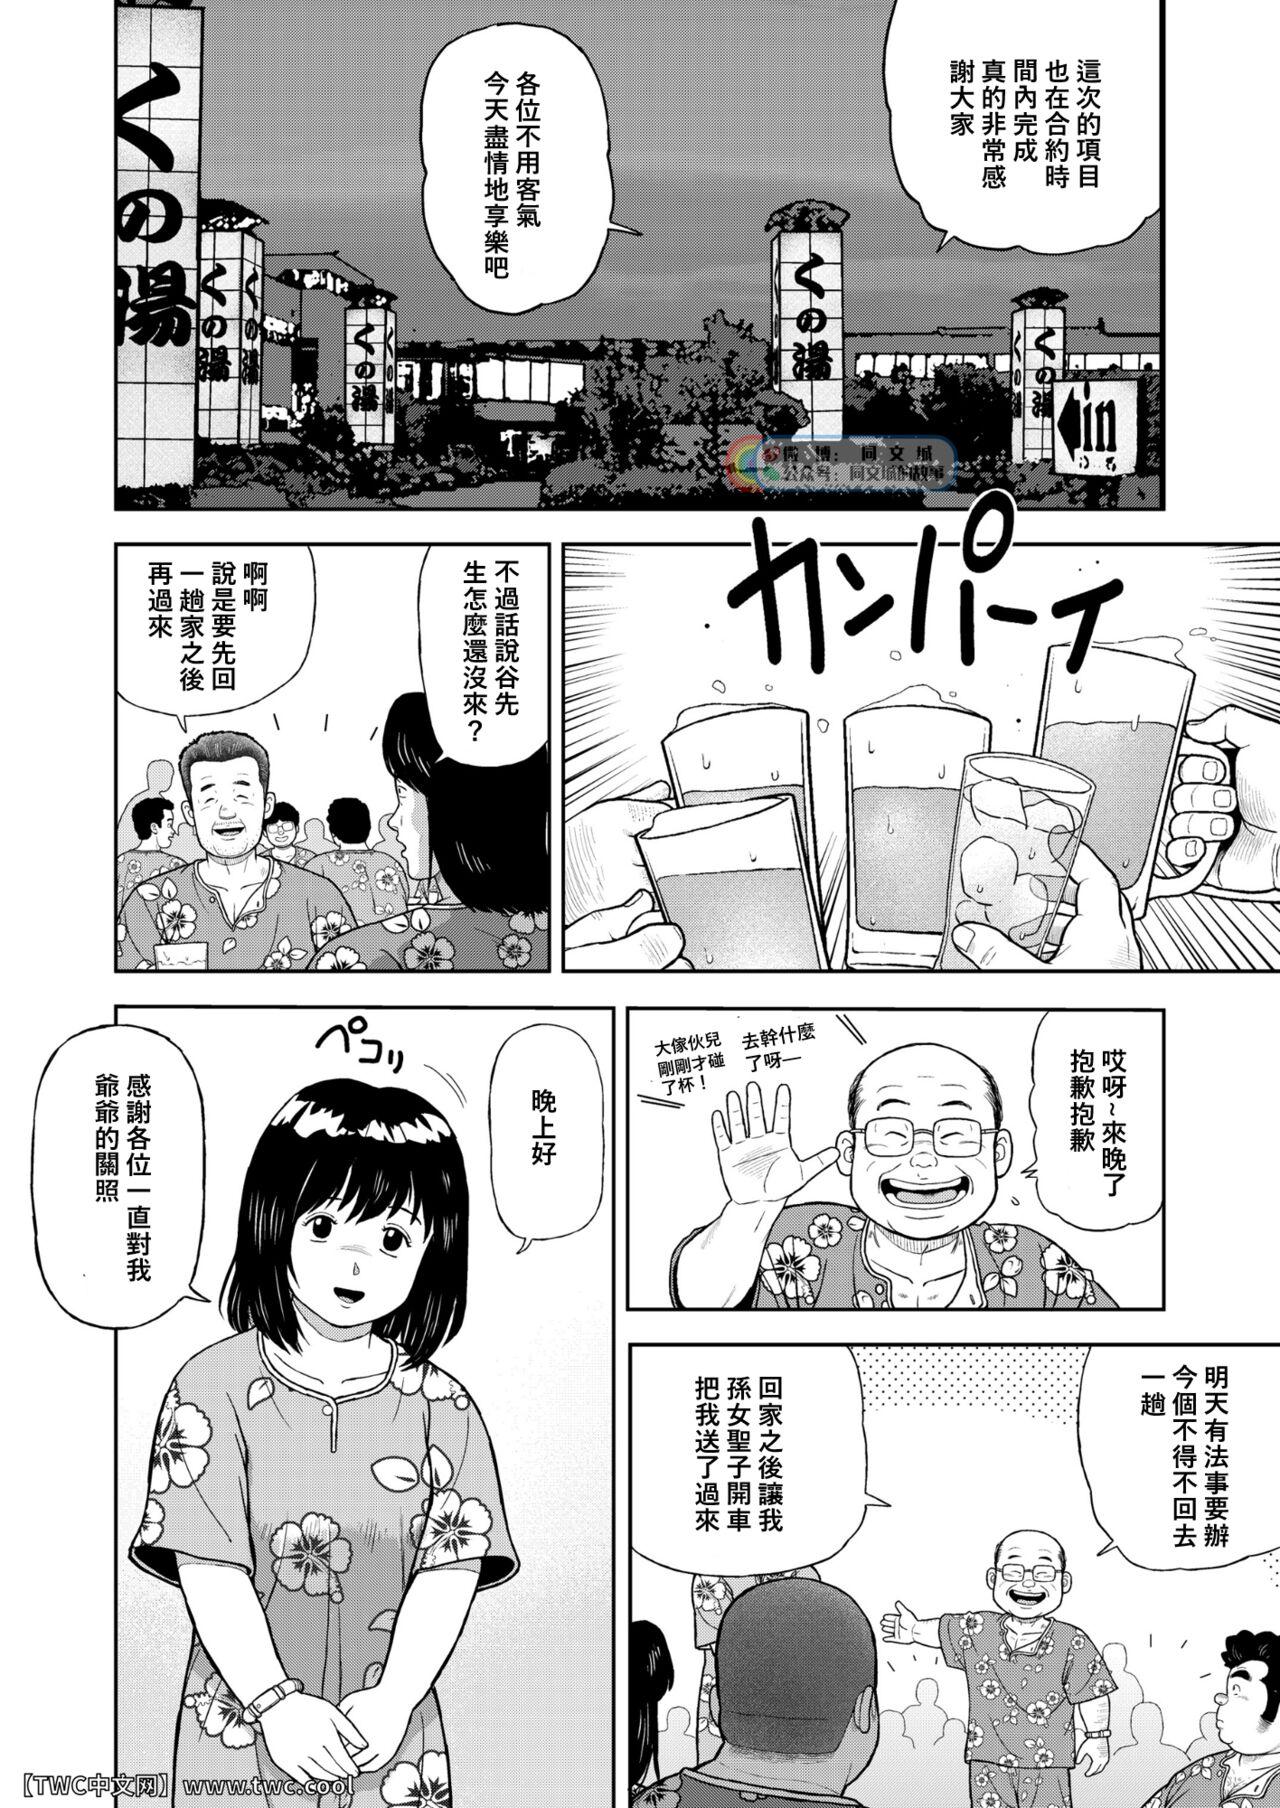 Sixtynine Kunoyu Nijyunanahatsume Anokane o Narasunohadonata - Original Peluda - Page 2